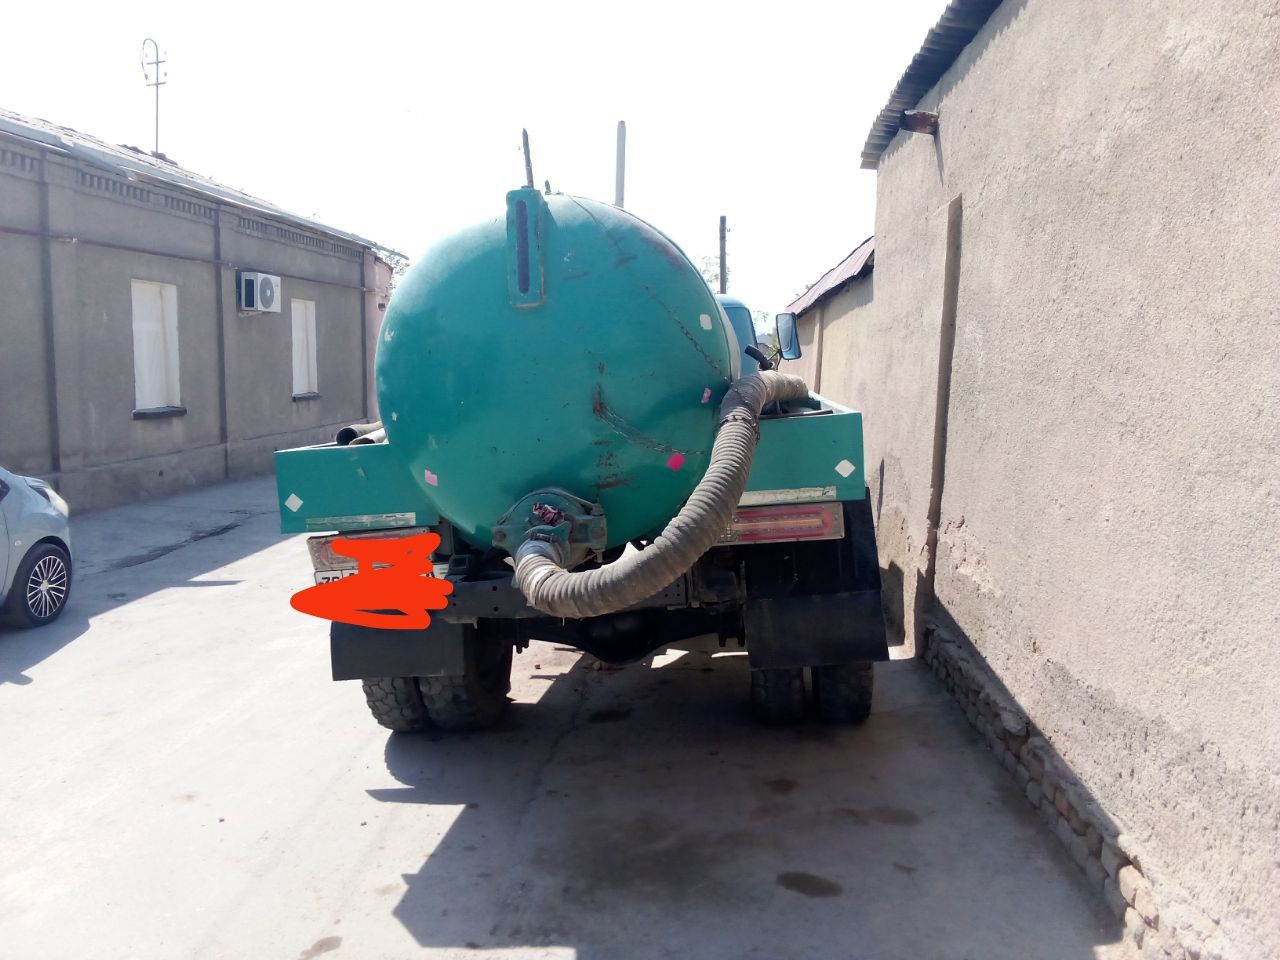 Газ 53 гавнавоз сотилади Самарканд шахар